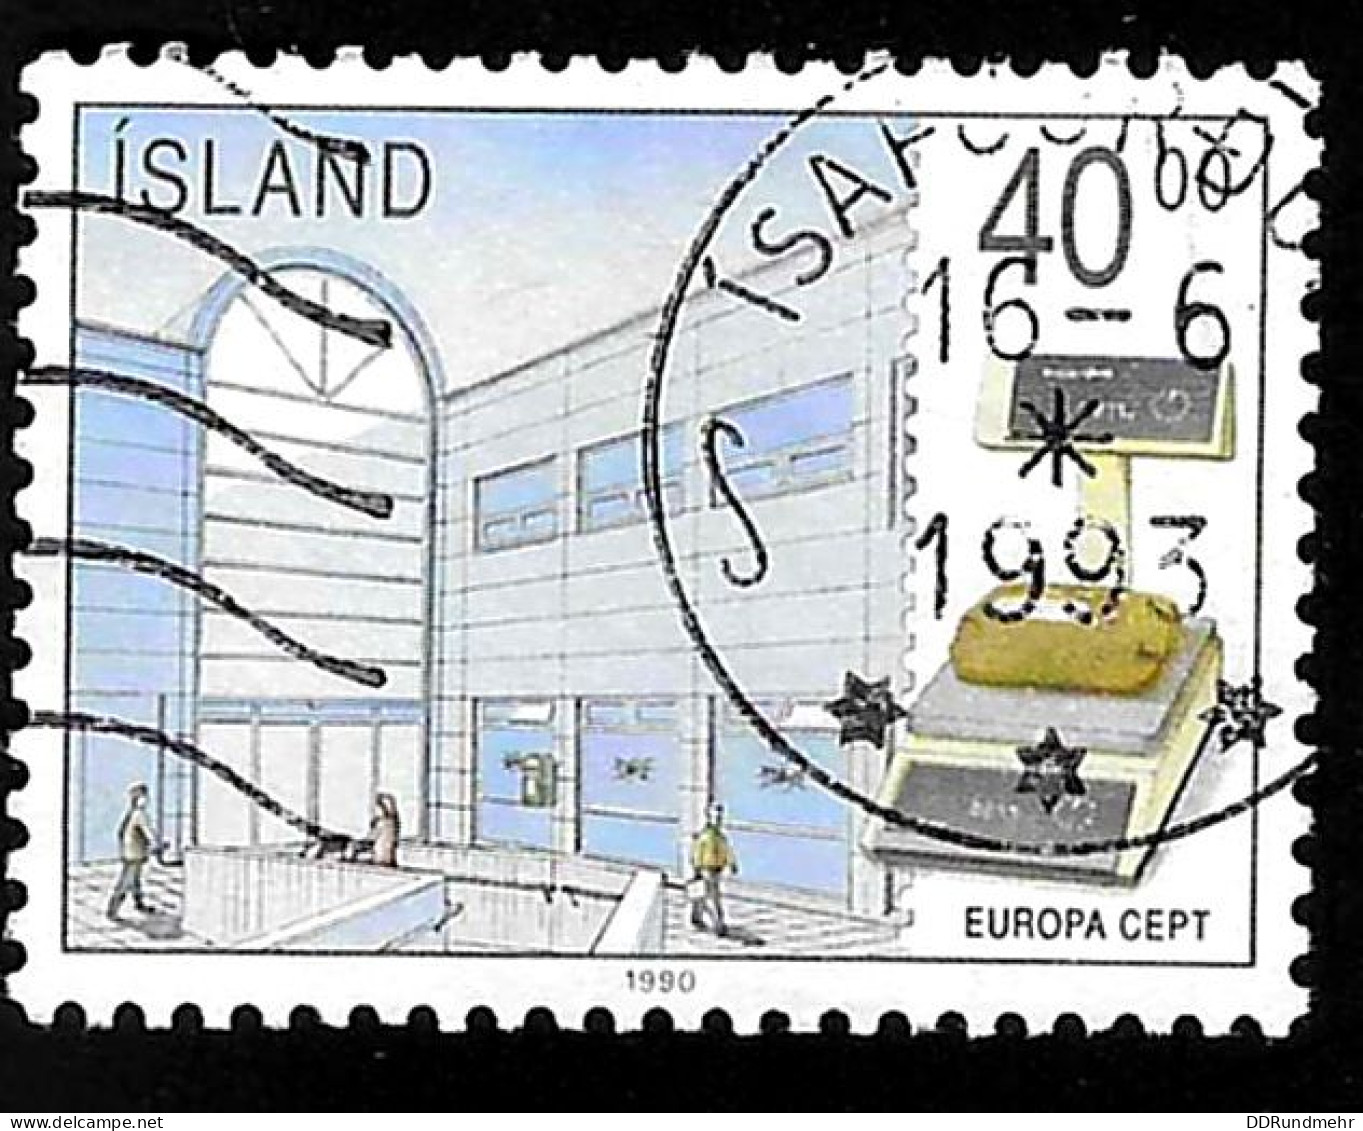 1990 Europa Michel IS 727 Stamp Number IS 699 Yvert Et Tellier IS 680 Stanley Gibbons IS 754 Used - Gebruikt